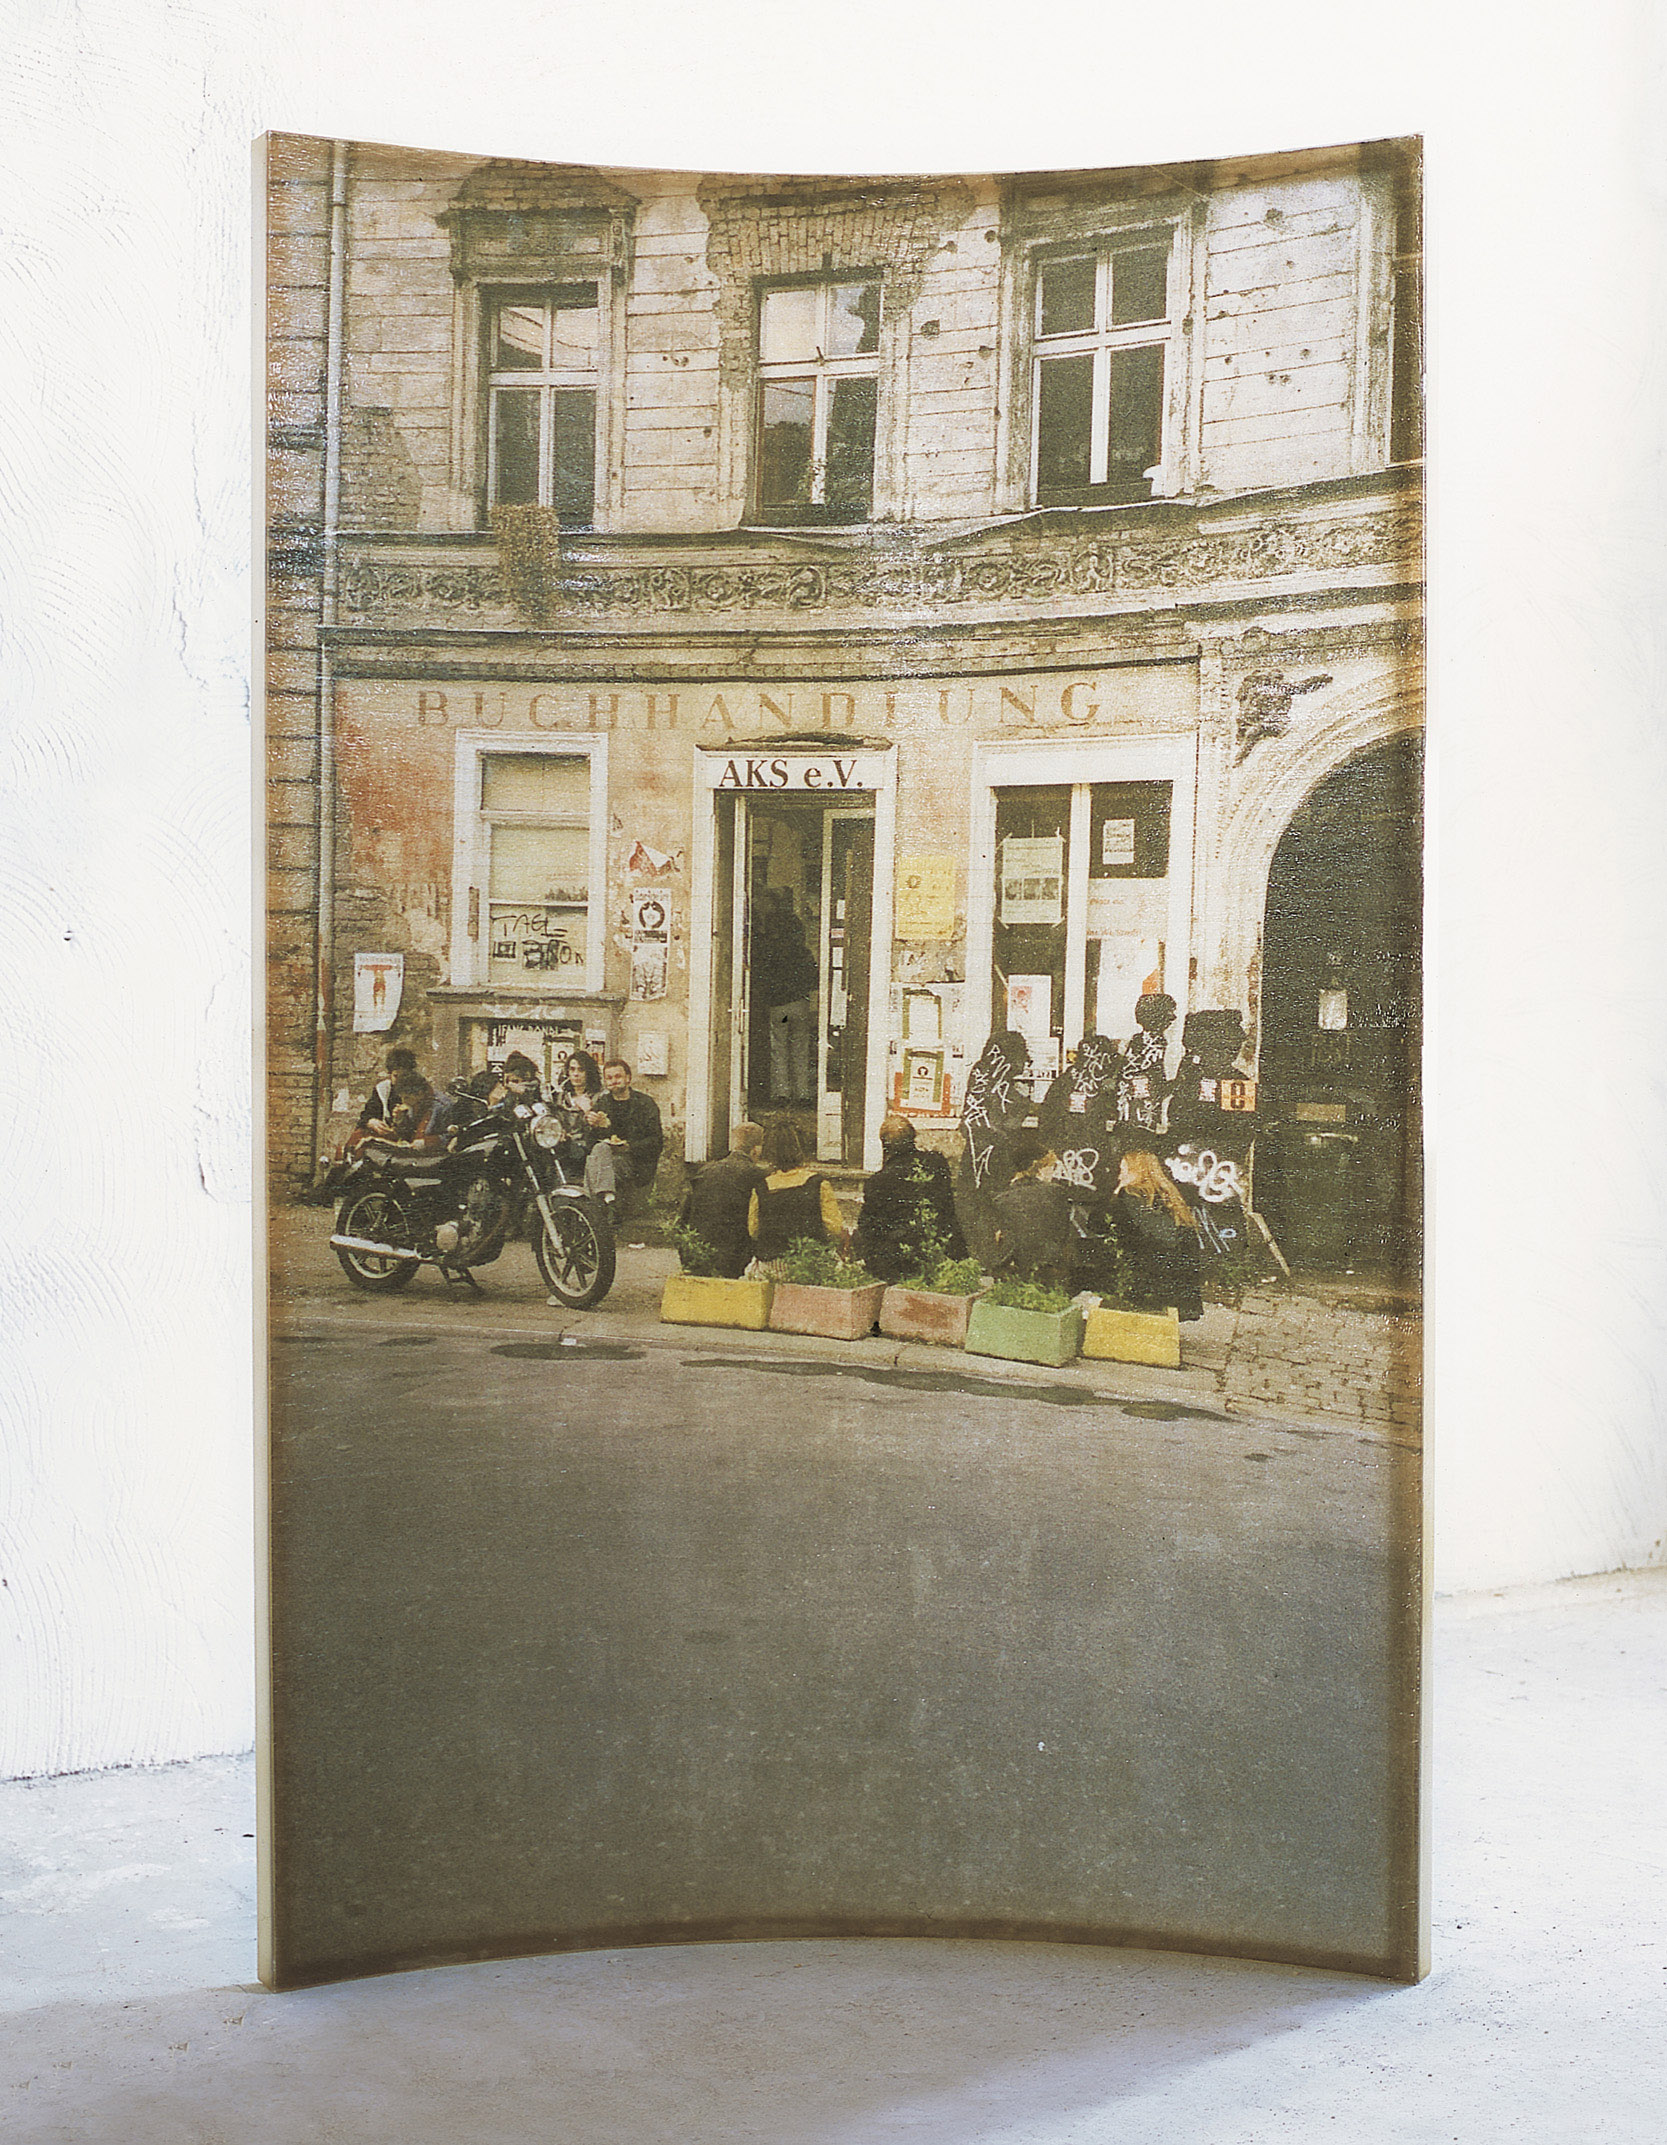 Amador. 'L'home i la ciutat', 2000, polyester resin and fotography, 240 x 163 x 35 cm.